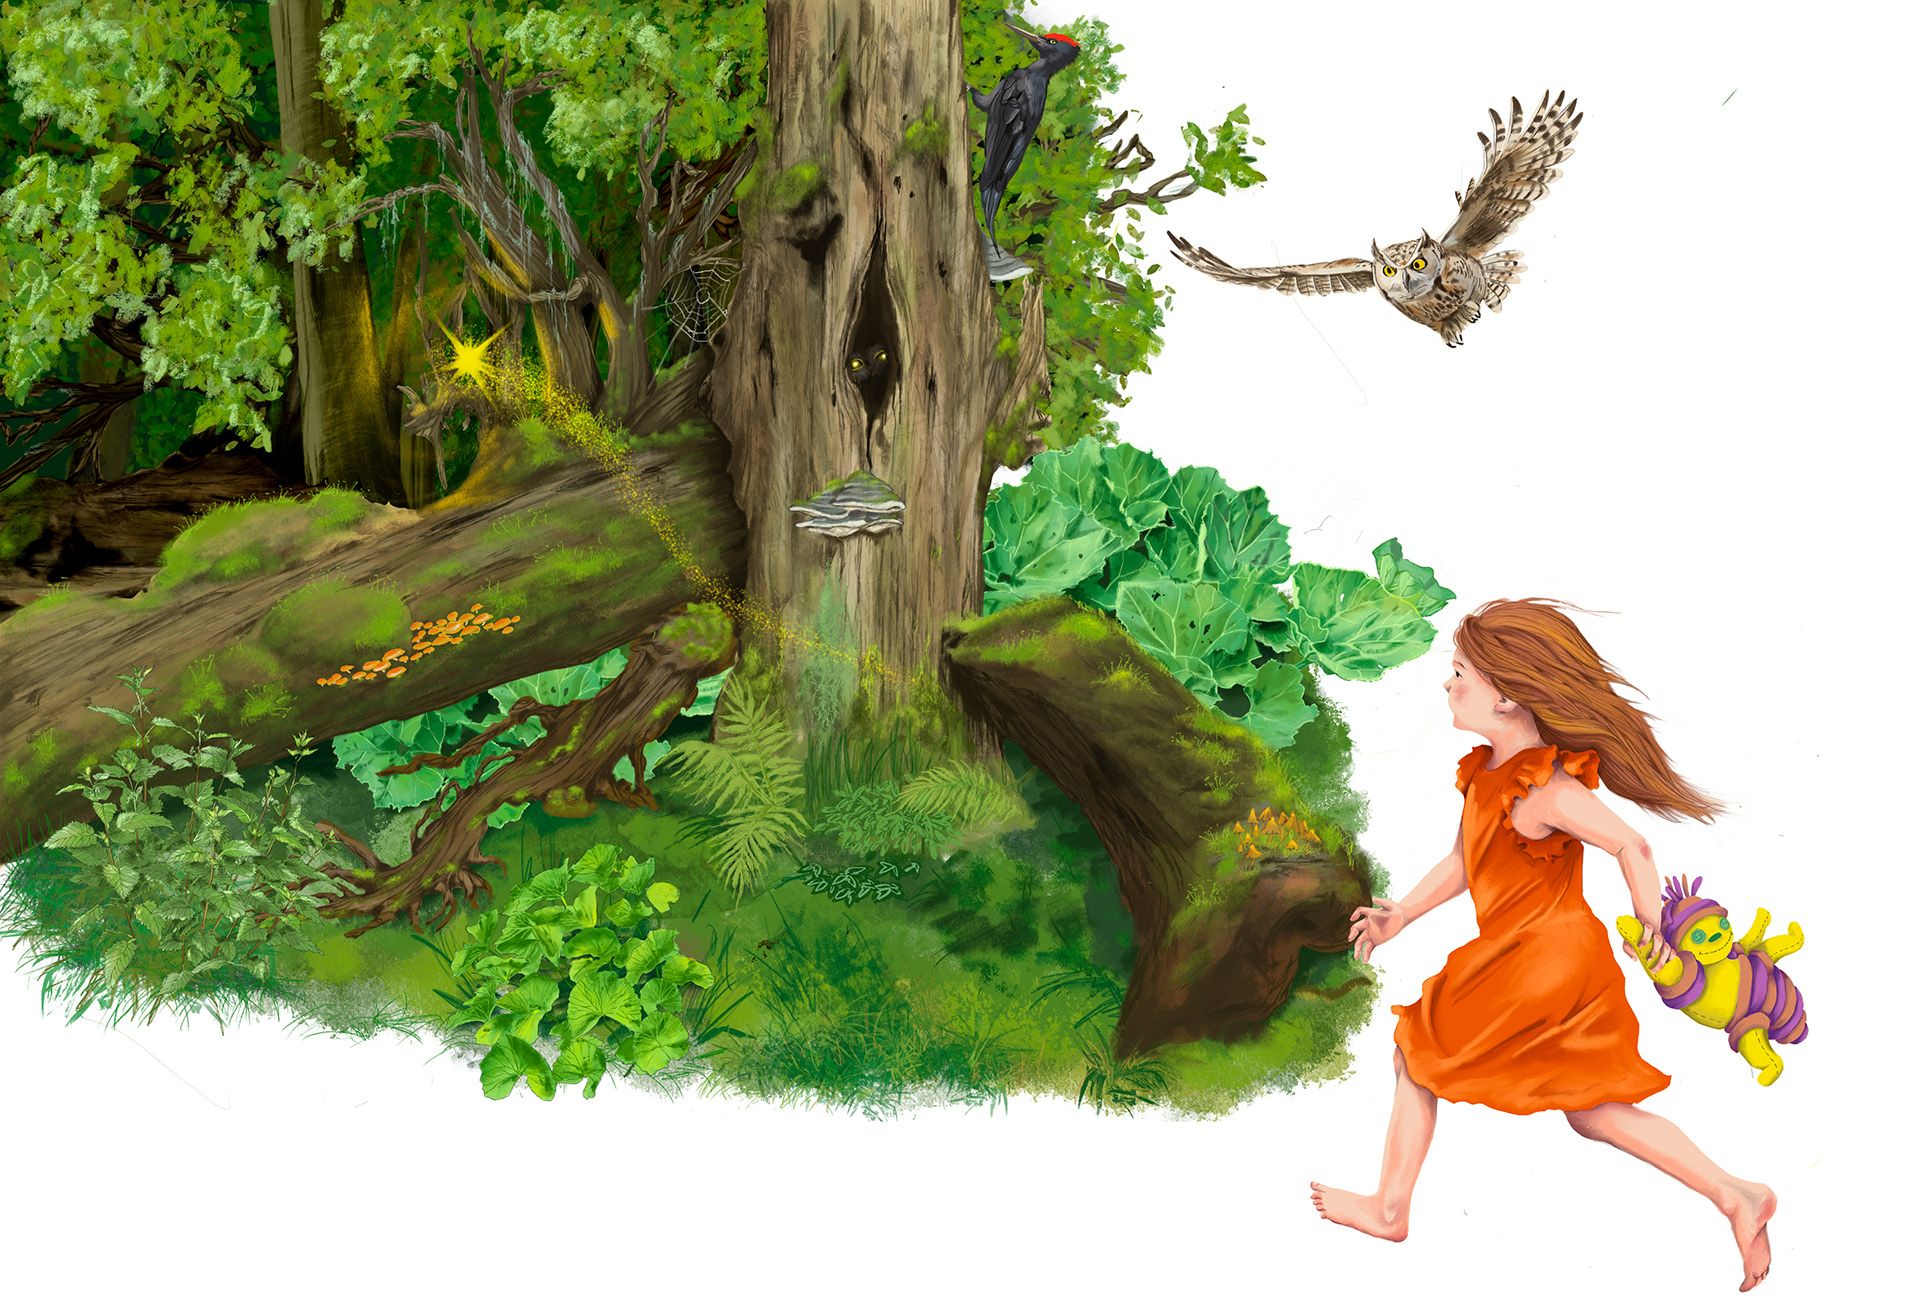 ein Mädchen rennt einem glitzernden Stern hinterher in einen dunklen Wald. In der hand hat sie ein Stofftier. Rechts von ihr fliegt eine Eule. An einem Baumstamm ist ein Specht.